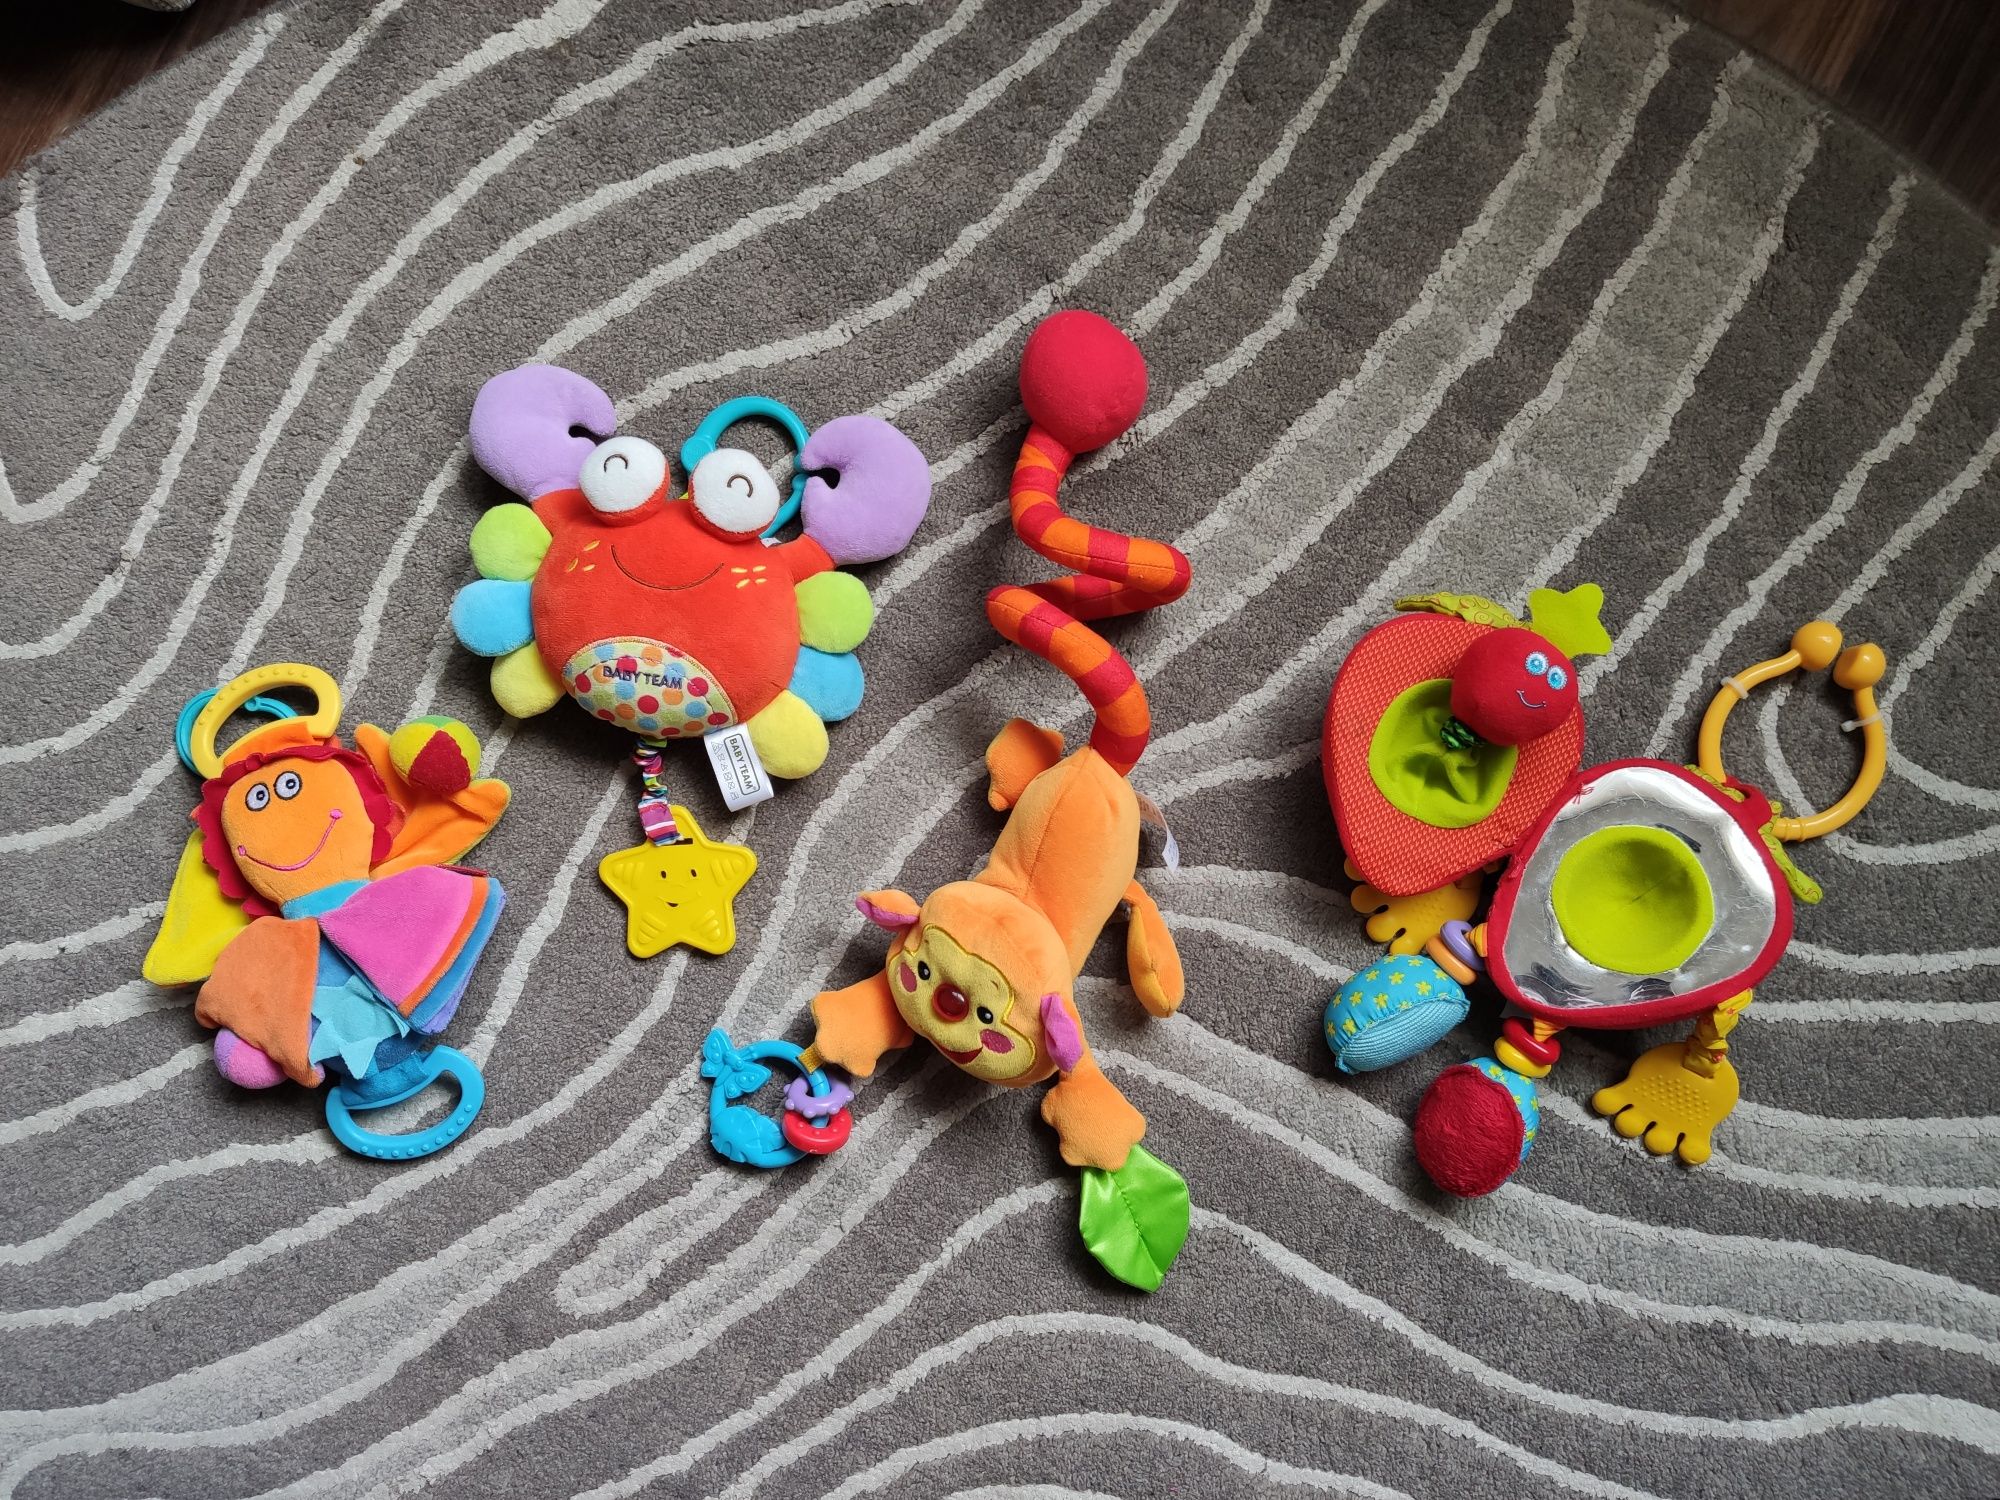 Развивающие игрушки Tiny Love, Lamaze, Playgro, Baby team